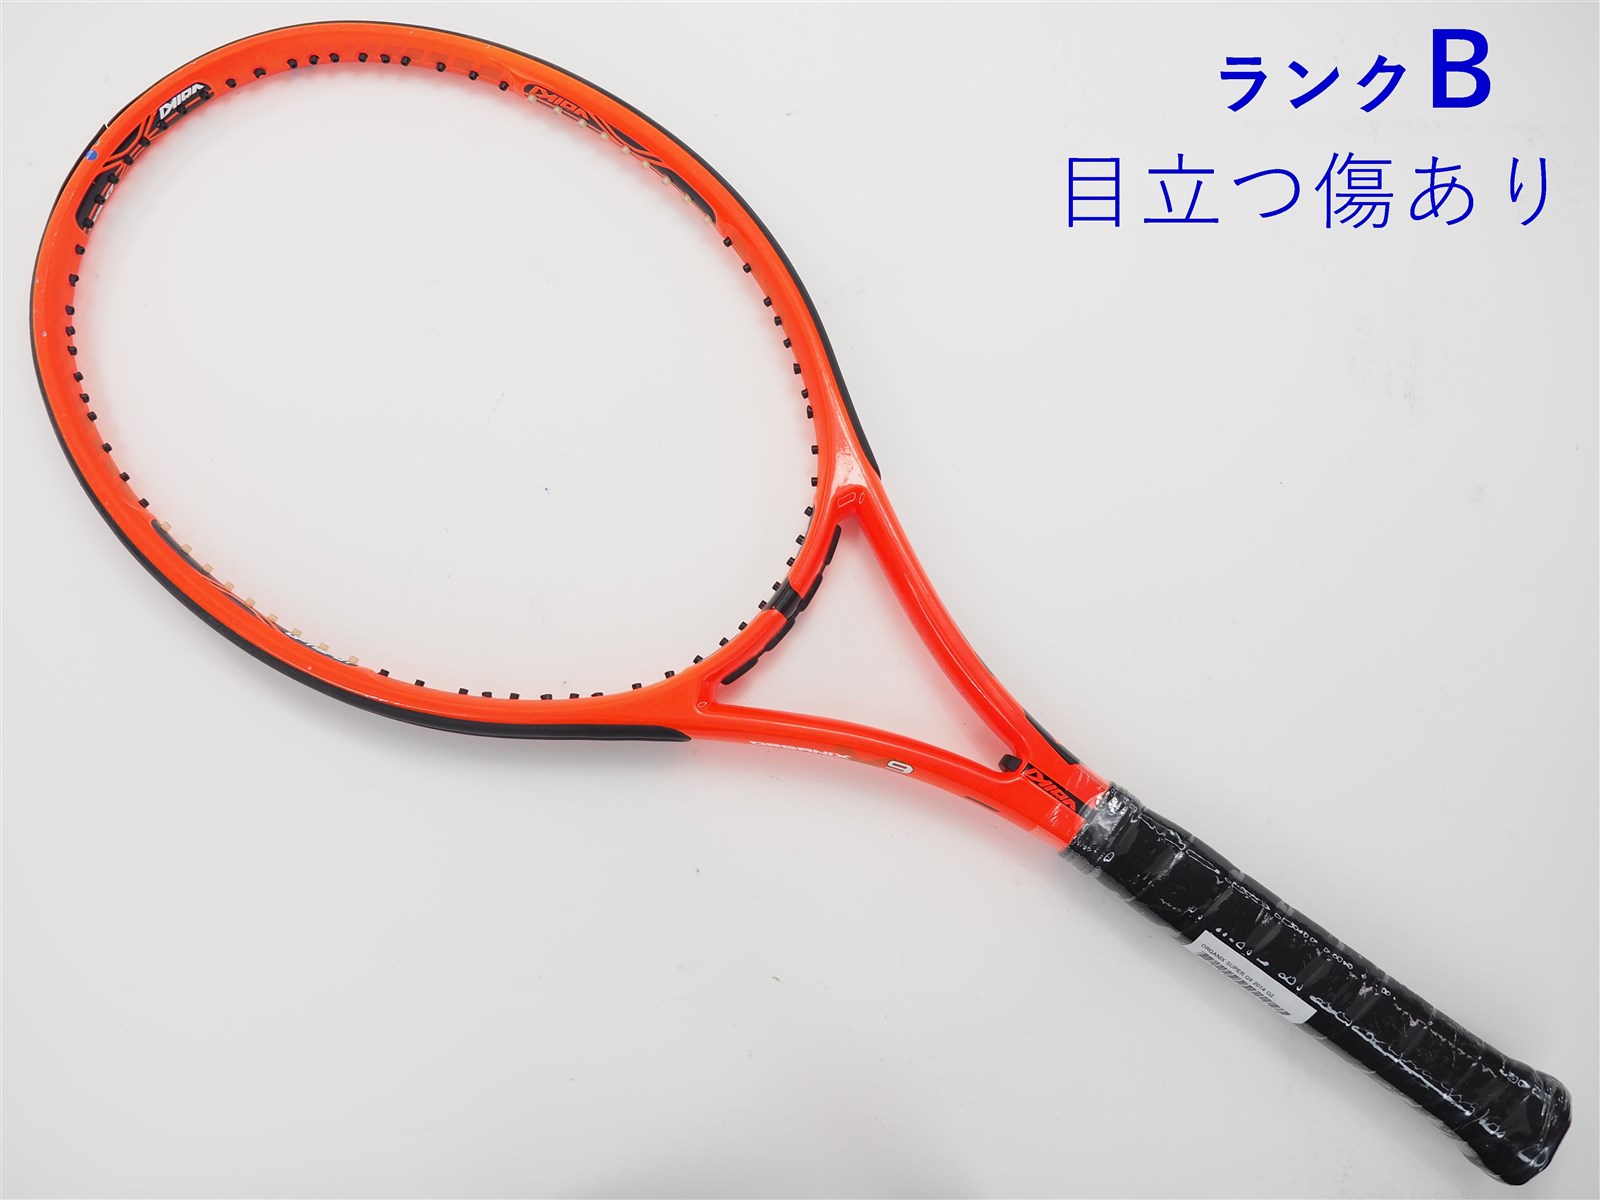 テニスラケット フォルクル オーガニクス V1 OS【トップバンパー割れ有り】 (G1)VOLKL Organix V1 OS